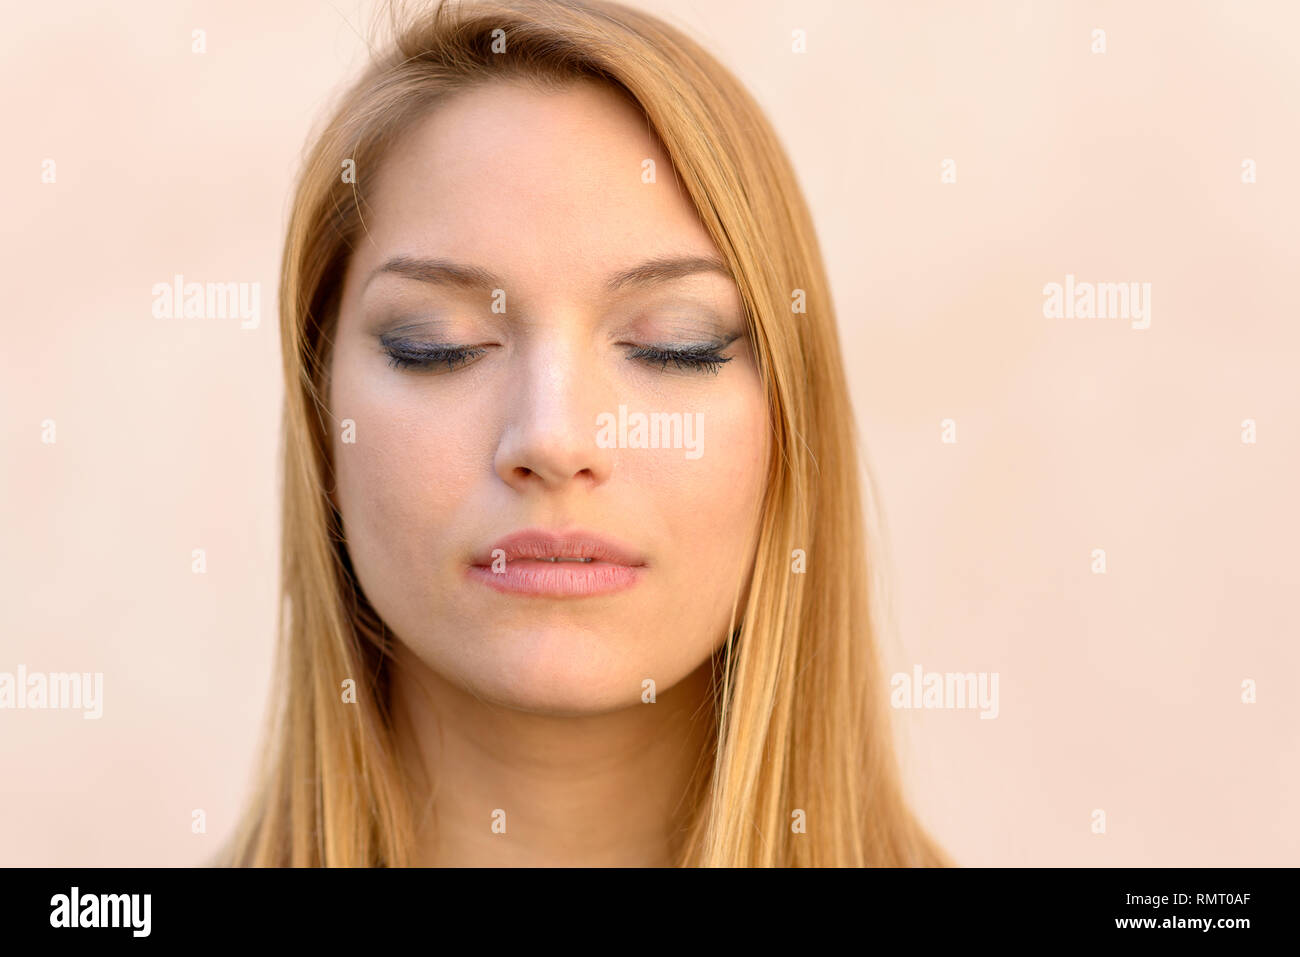 Serena attraente donna bionda con gli occhi chiusi rilassante, de-sollecitazione o meditando in una chiusura colpo alla testa ritratto su una posizione neutra di studio backgro Foto Stock